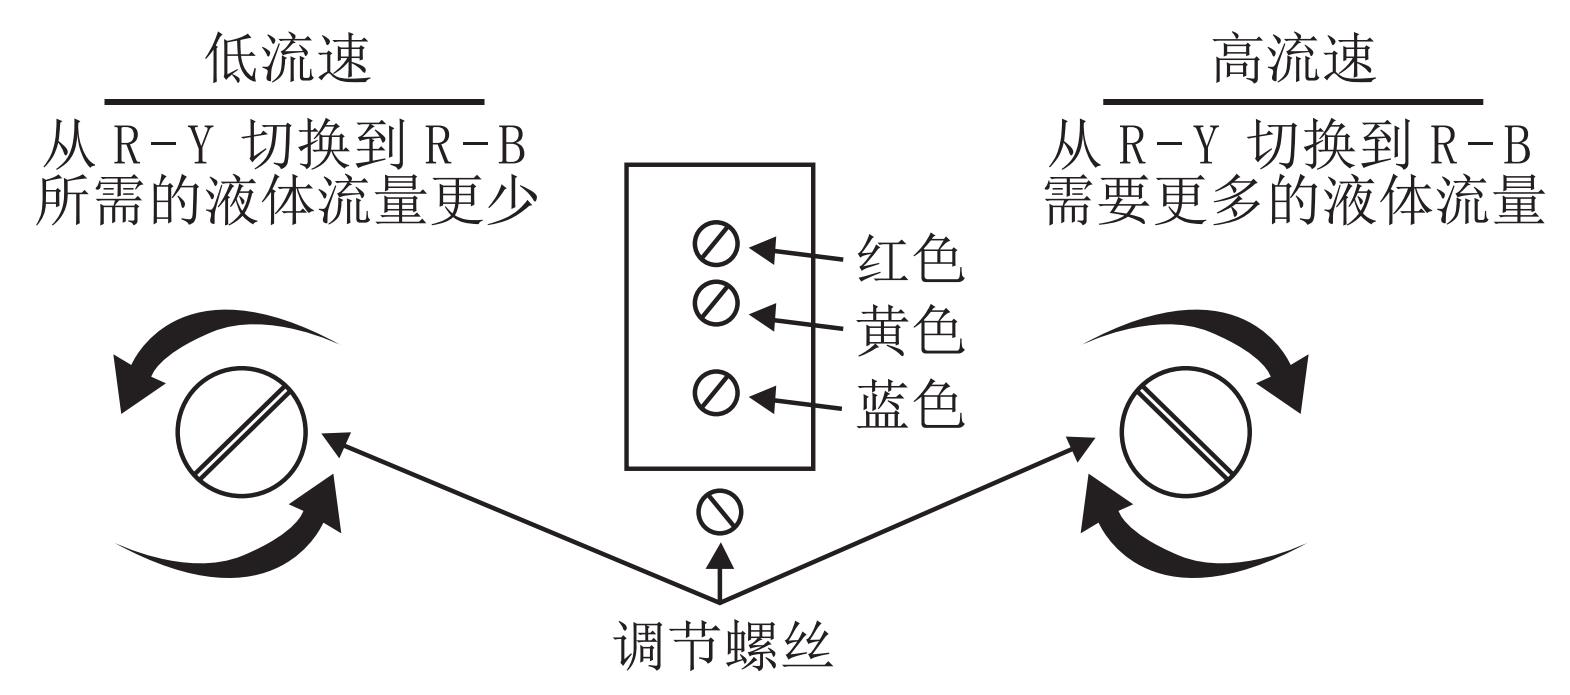 尺寸截图2-中文.jpg